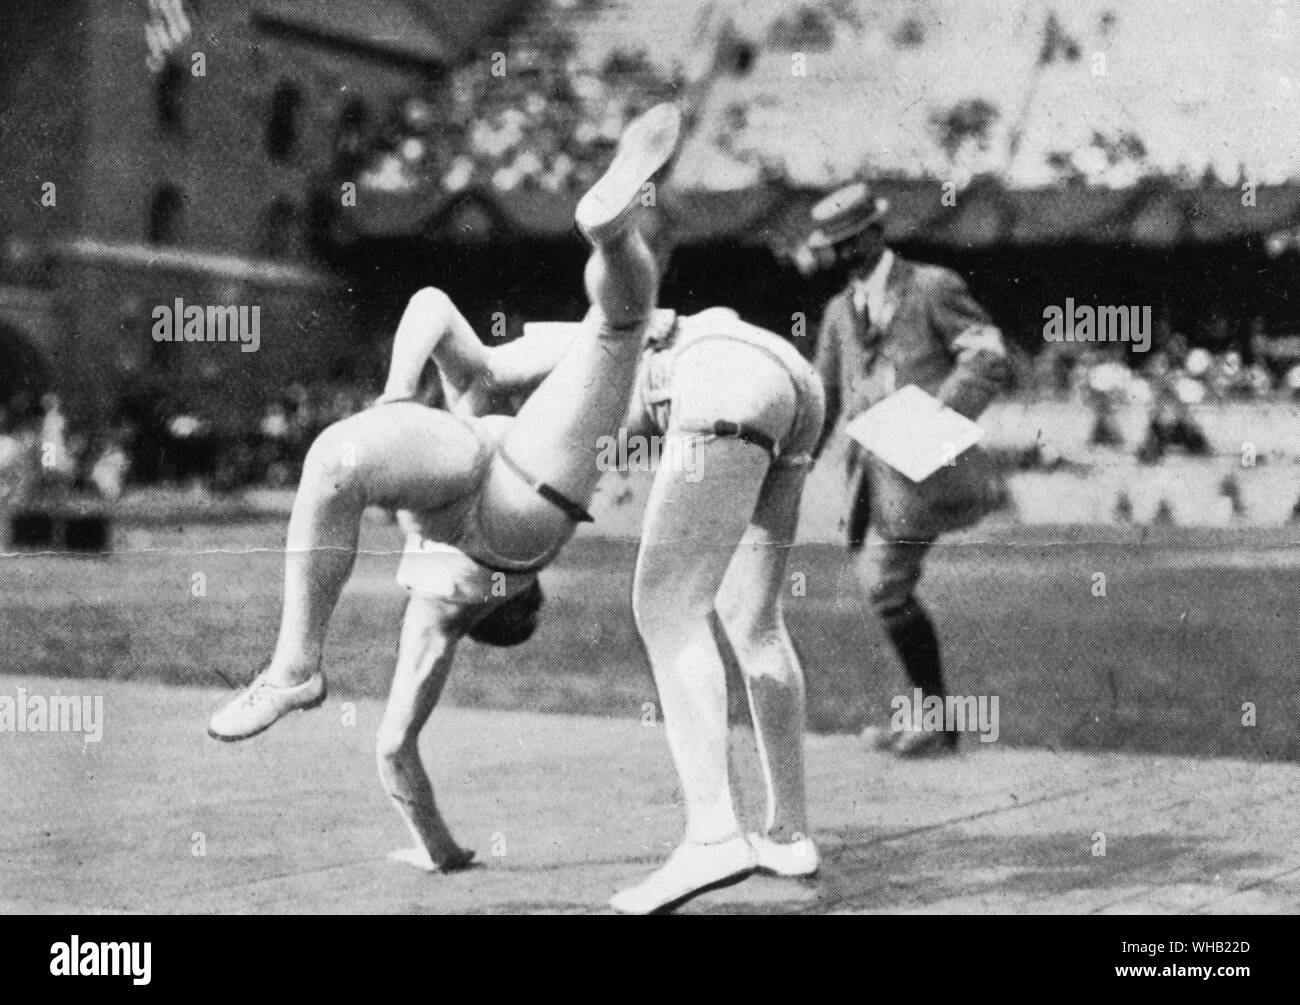 Stockholm 1912 Olympische Spiele. Eine Demonstration von glima Wrestling. Glima Wrestling ist noch in Skandinavien heute geübt und es wird geglaubt, dass es fast von der Wikingerzeit unverändert ist. Die Olympischen Spiele Seite 75. Stockfoto